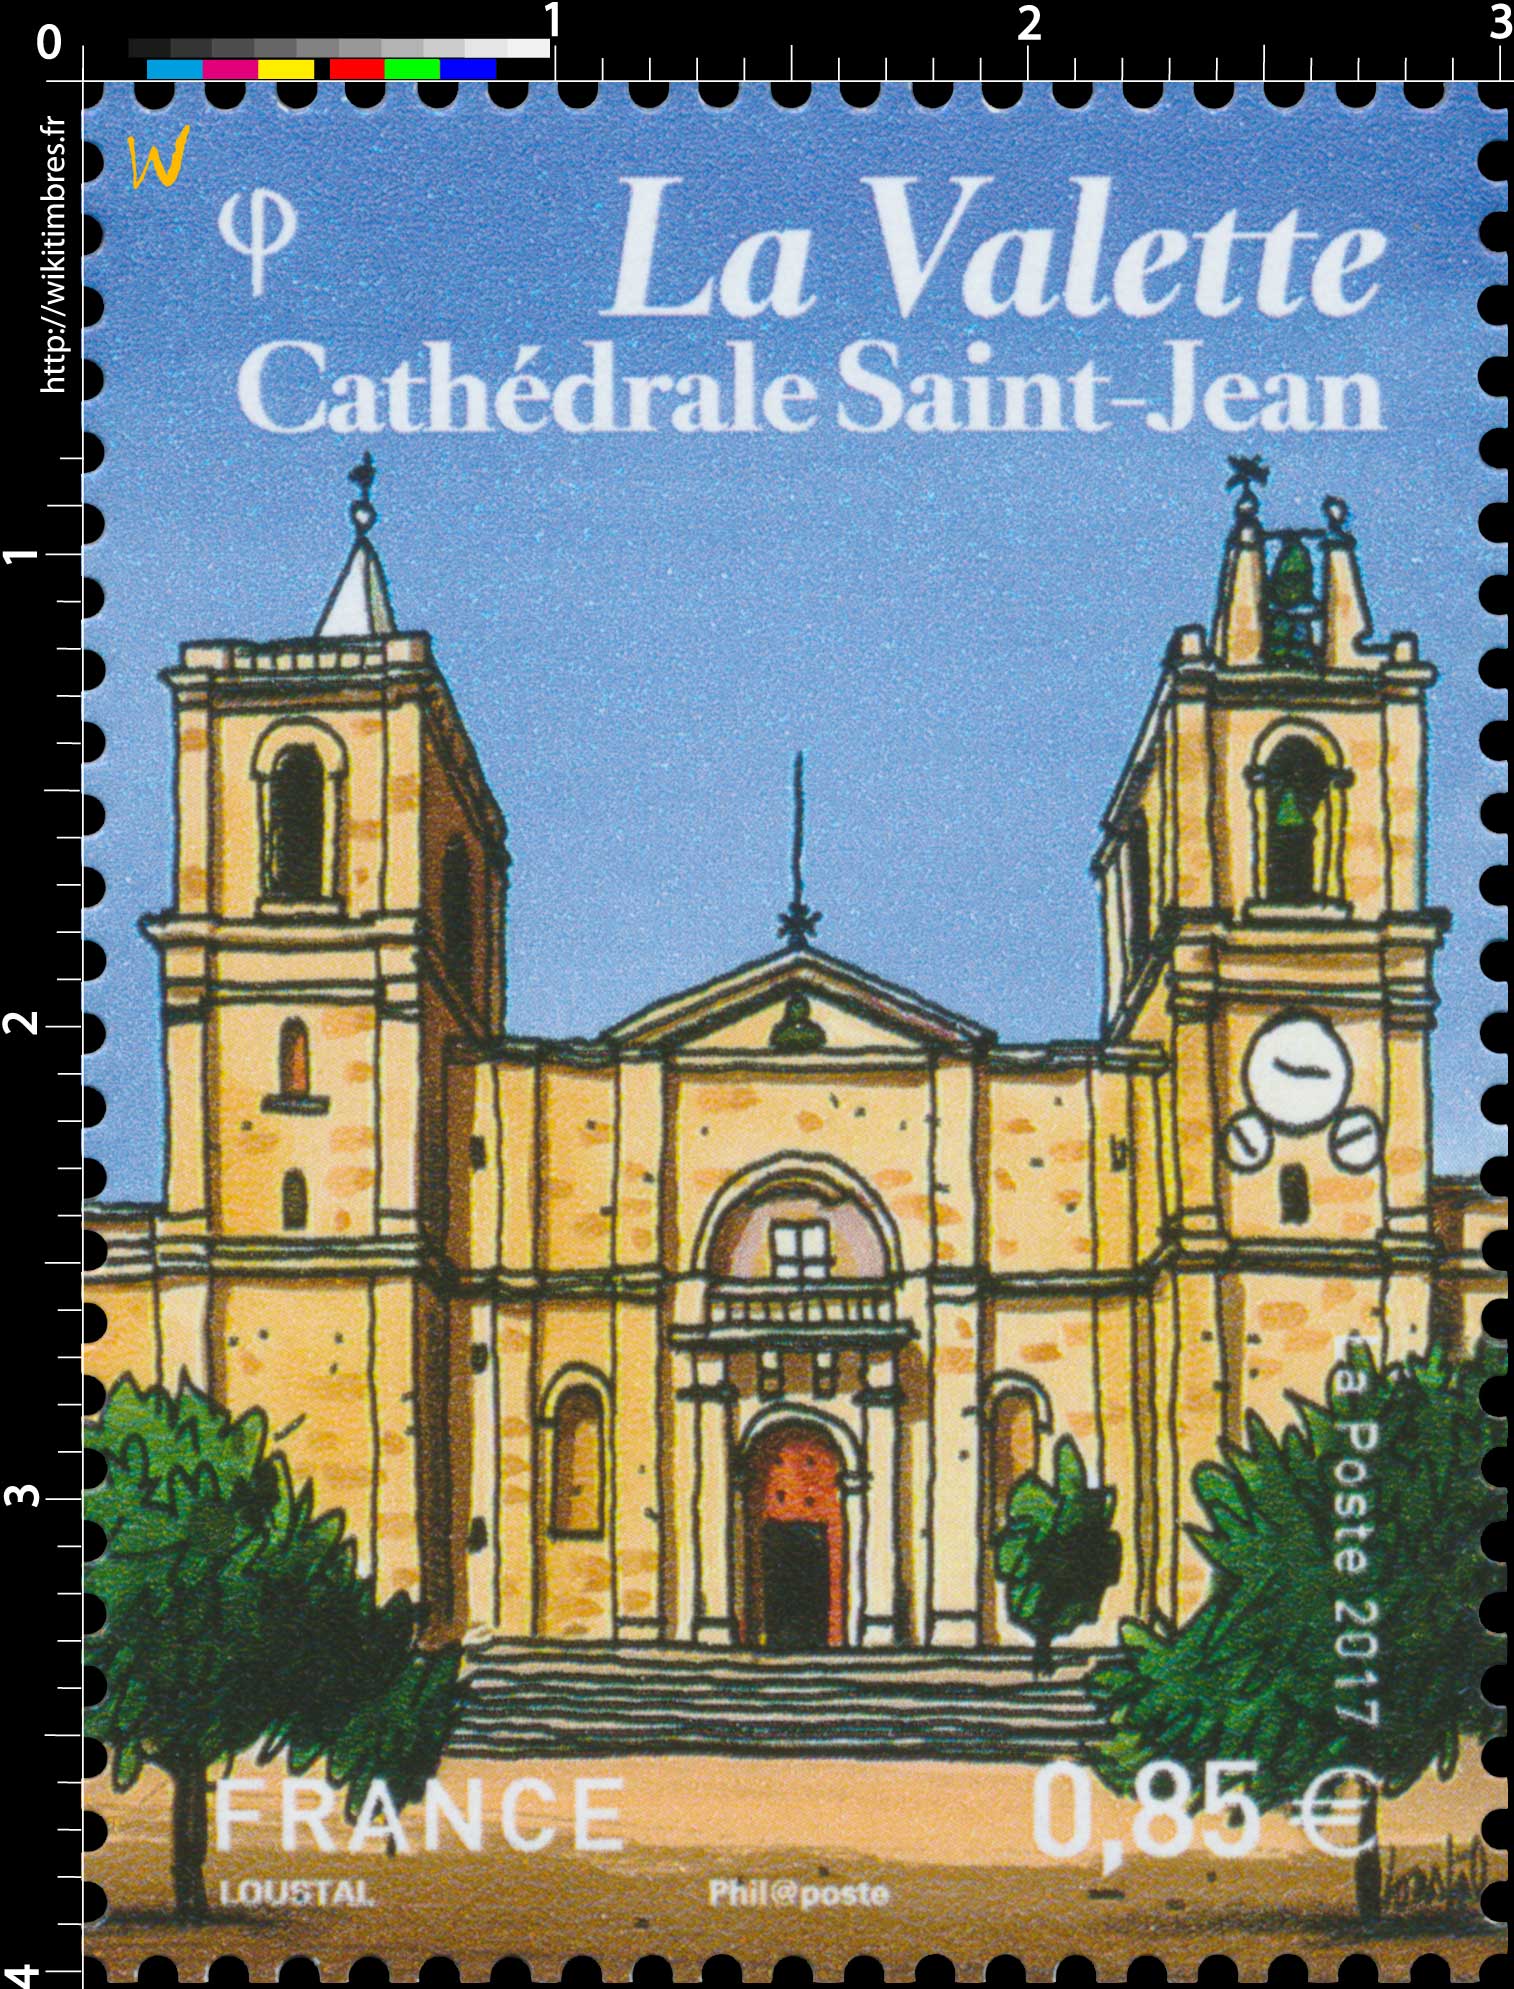 2017 La Valette Cathédrale Saint-Jean